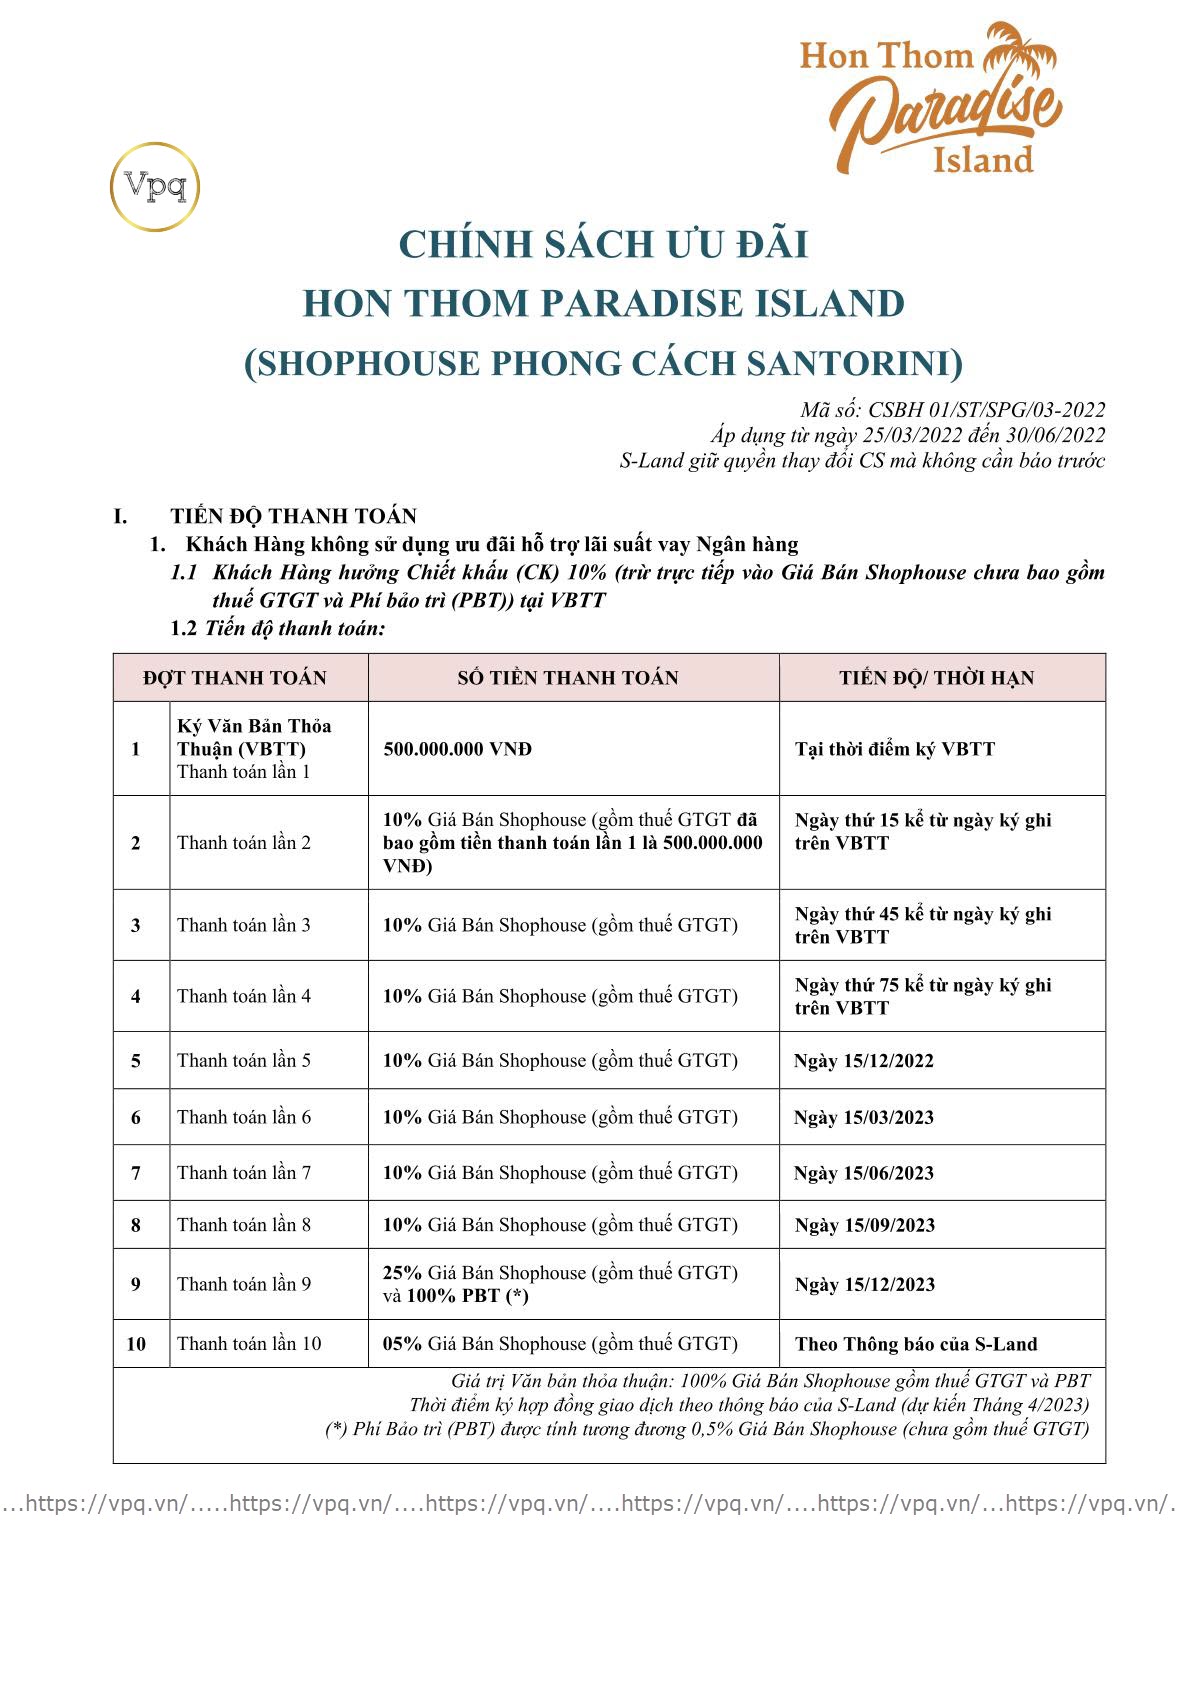 Chính sách ưu đãi Hòn Thơm Paradise Island - Shophouse phong cách Santorini -Ảnh trang 1